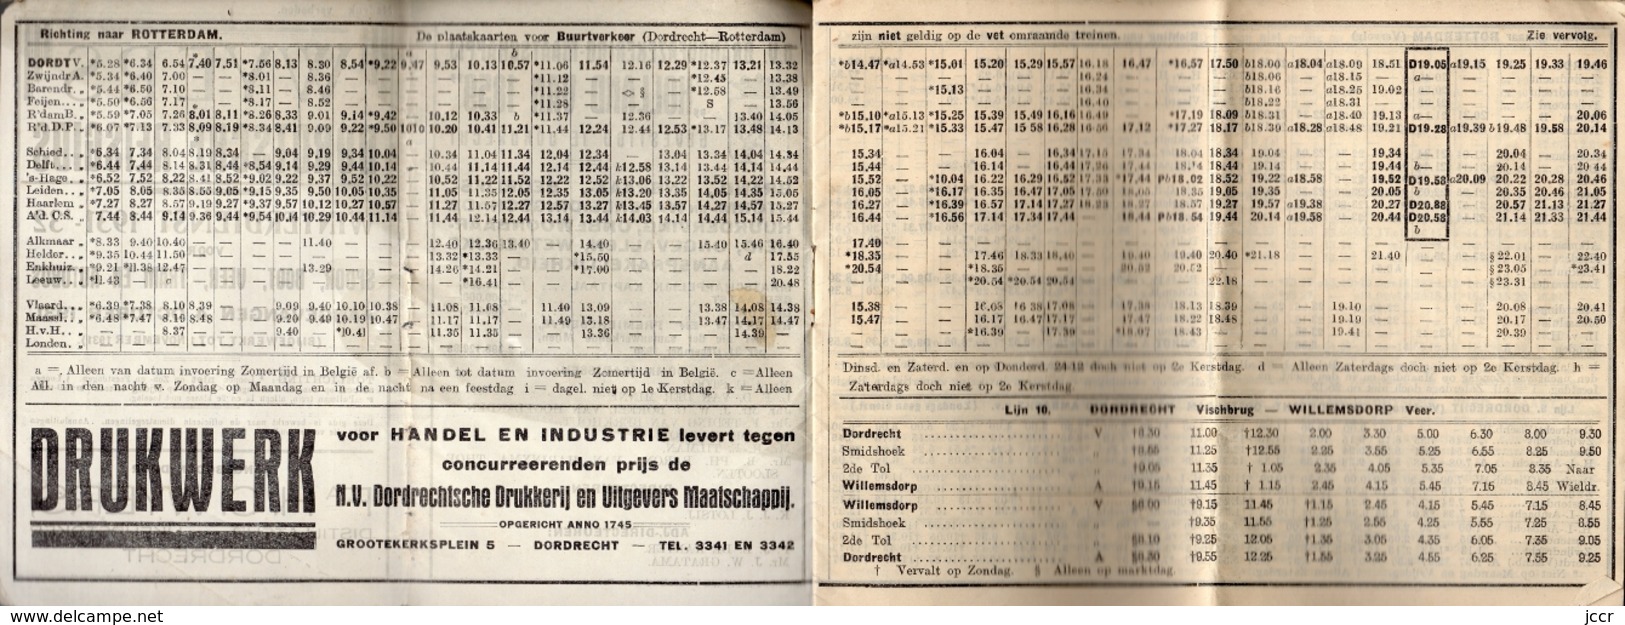 Wyers Dordtsche Reisgids - Winterdienst 1931-1932 Voor Spoor, Boot, Veer, Tram En Autobus - Turismo